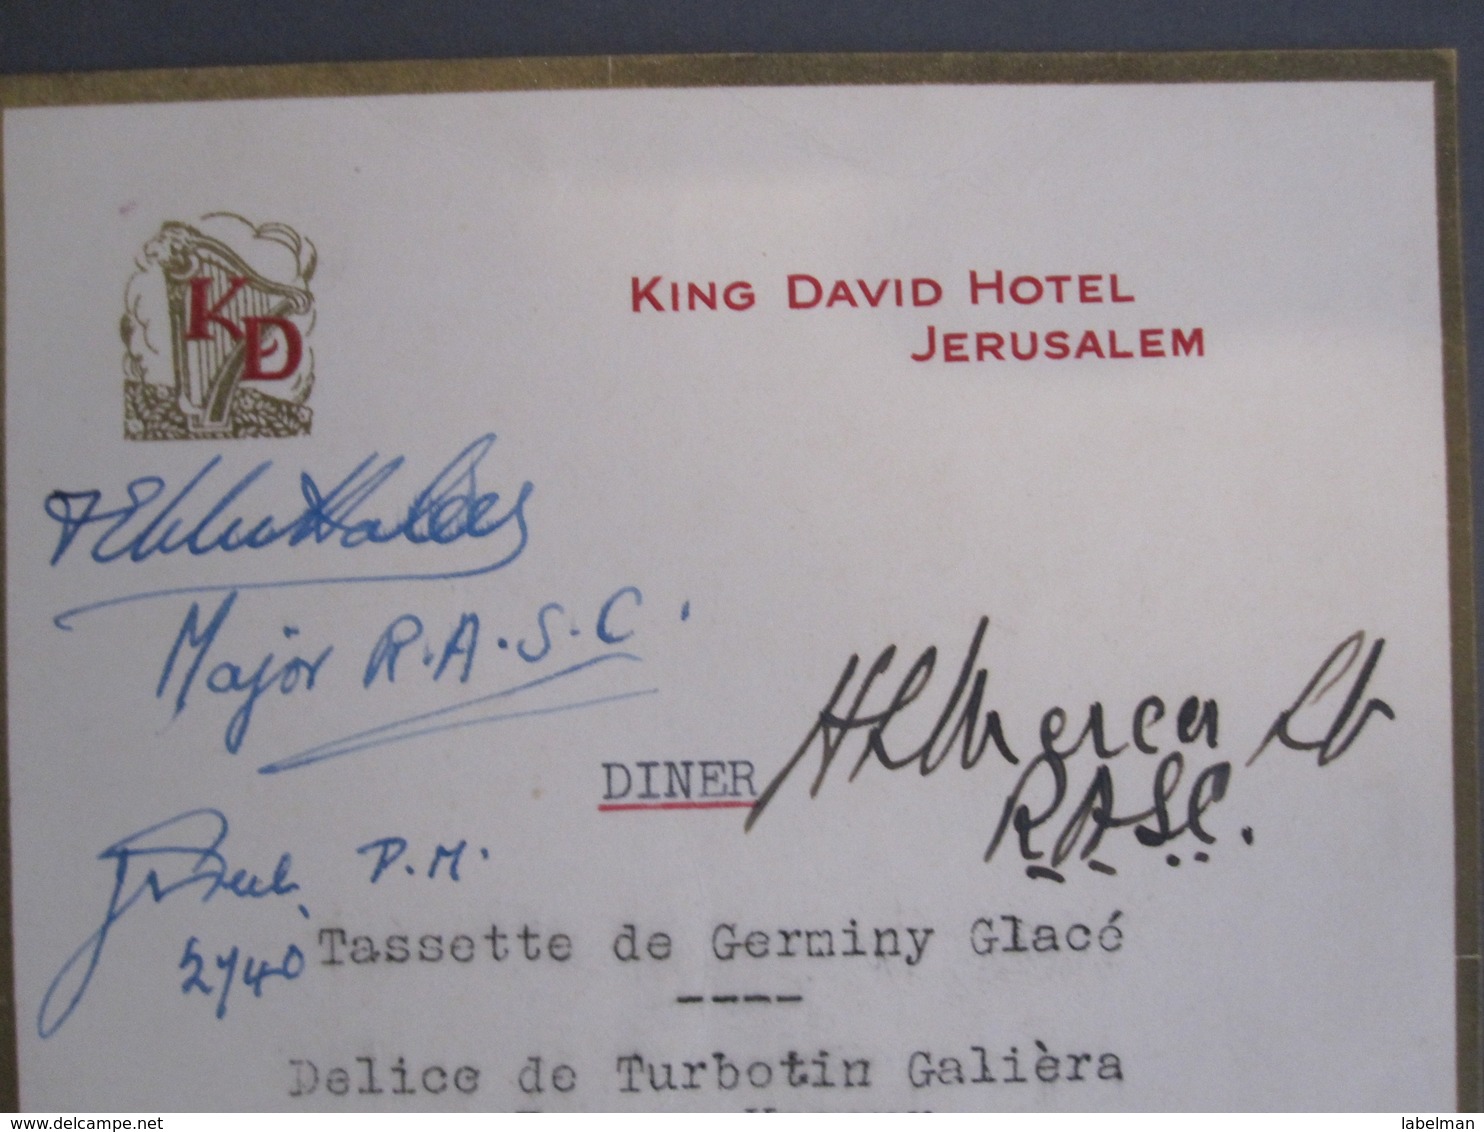 ISRAEL PALESTINE HOTEL KING DAVID RESTAURANT MENU 1940 JERUSALEM VINTAGE ADVERTISING DESIGN ORIGINAL - Hotel Labels